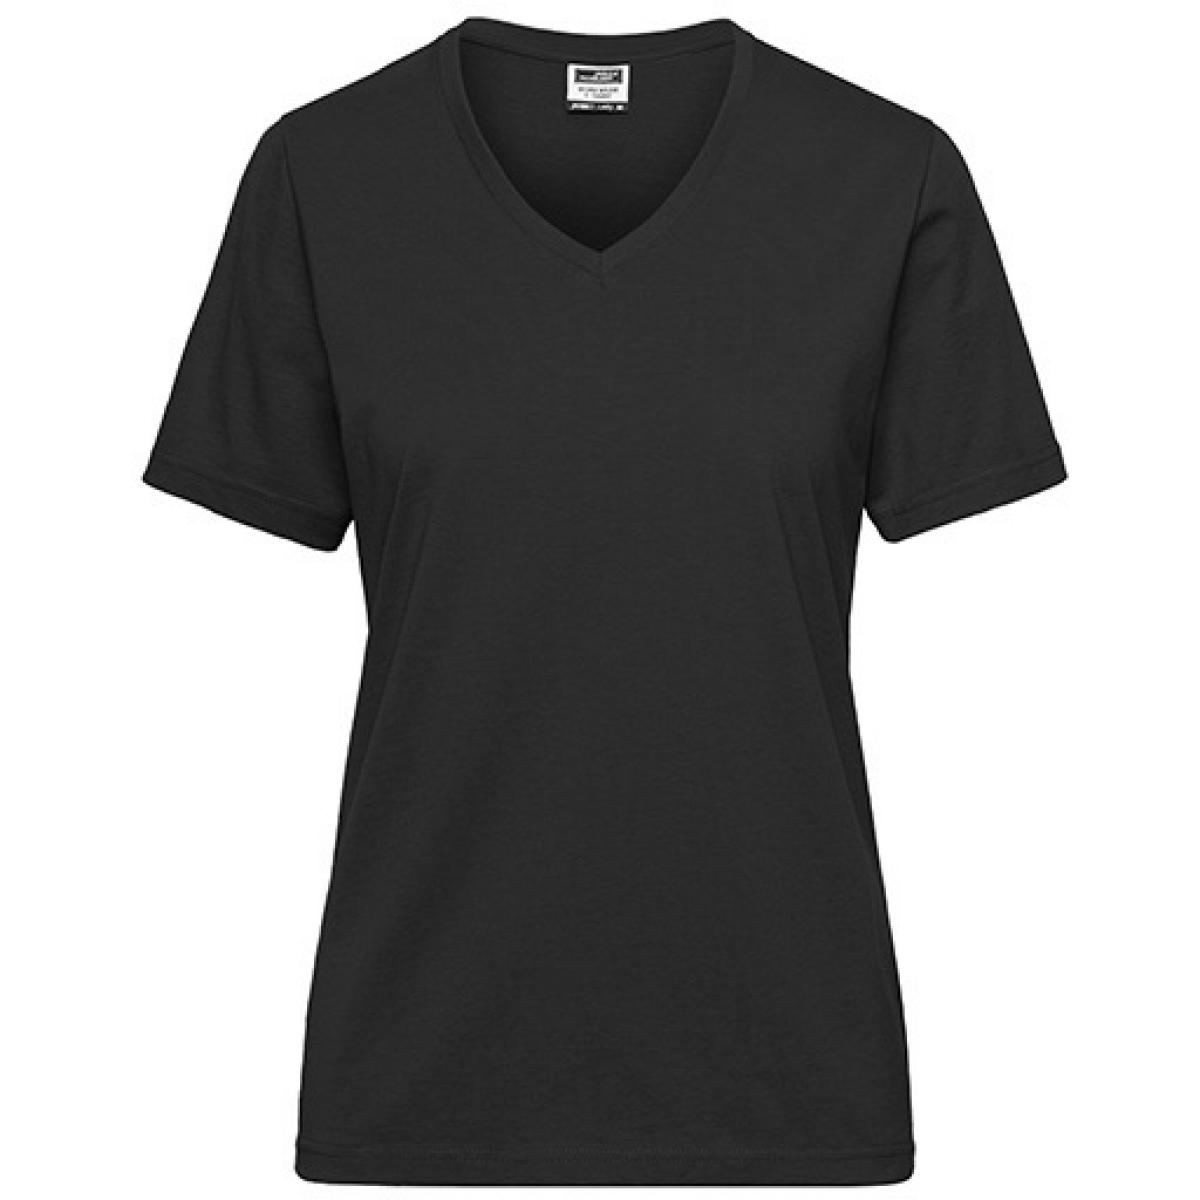 Hersteller: James+Nicholson Herstellernummer: JN1807 Artikelbezeichnung: Ladies‘ BIO Workwear T-Shirt / Damen T-Shirt - Waschbar 60C Farbe: Black